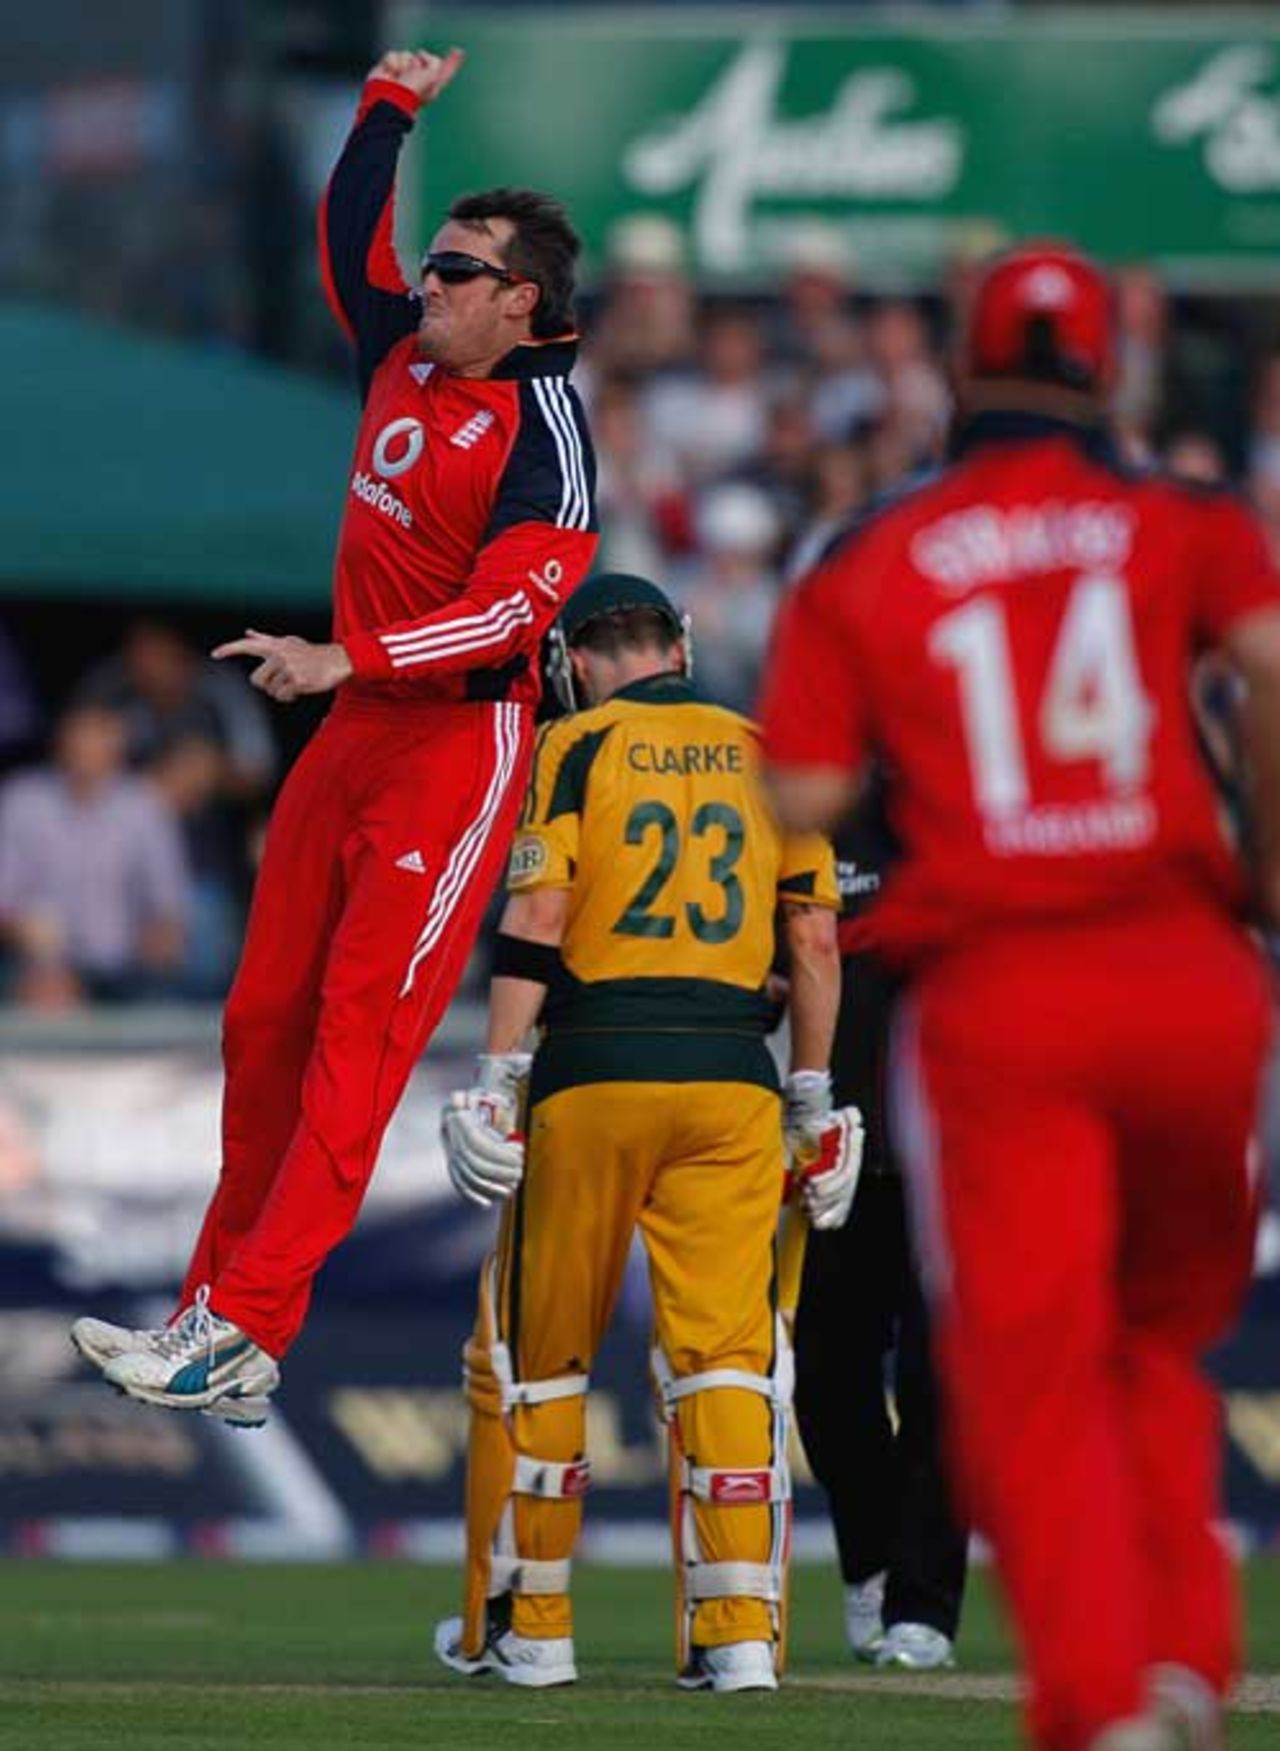 Graeme Swann celebrates his dismissal of Ricky Ponting, England v Australia, 7th ODI, Chester-le-Street, September 20, 2009